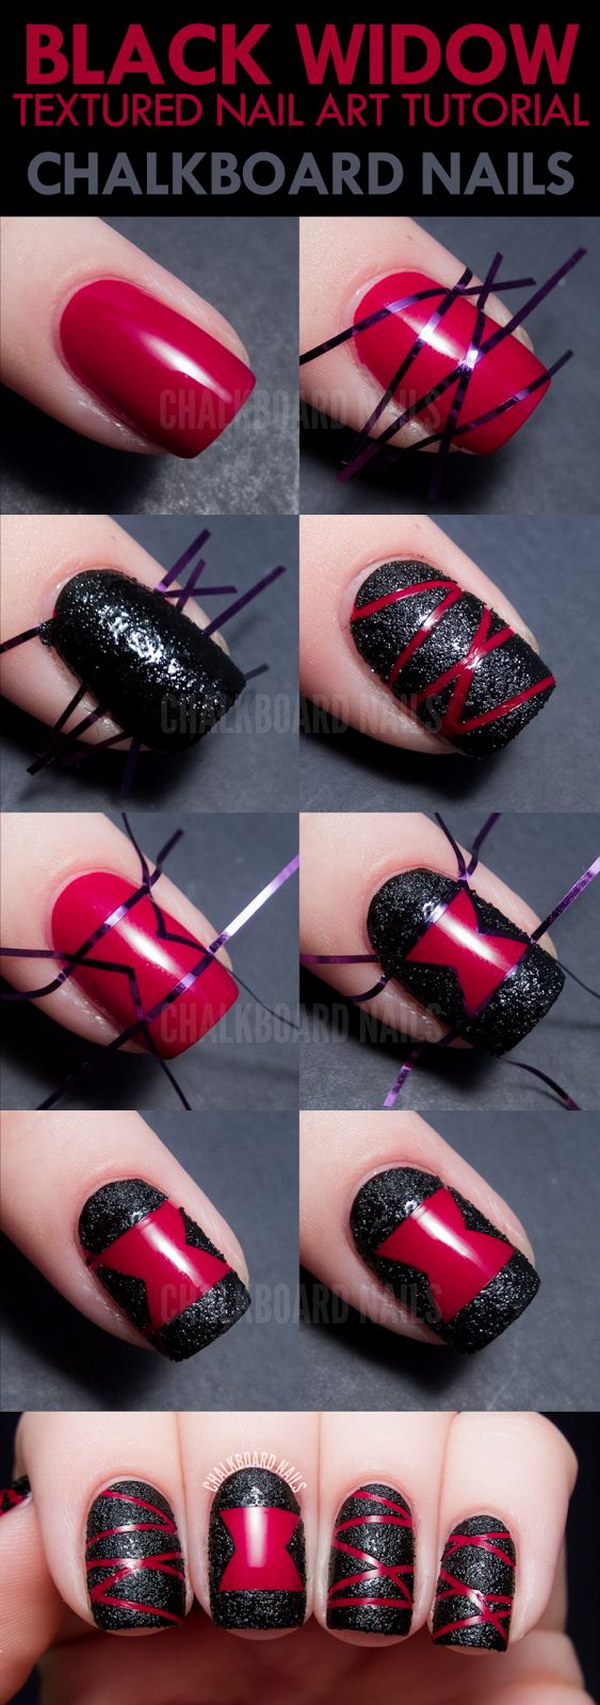 Black Widow Spider Textured Nail Art. 